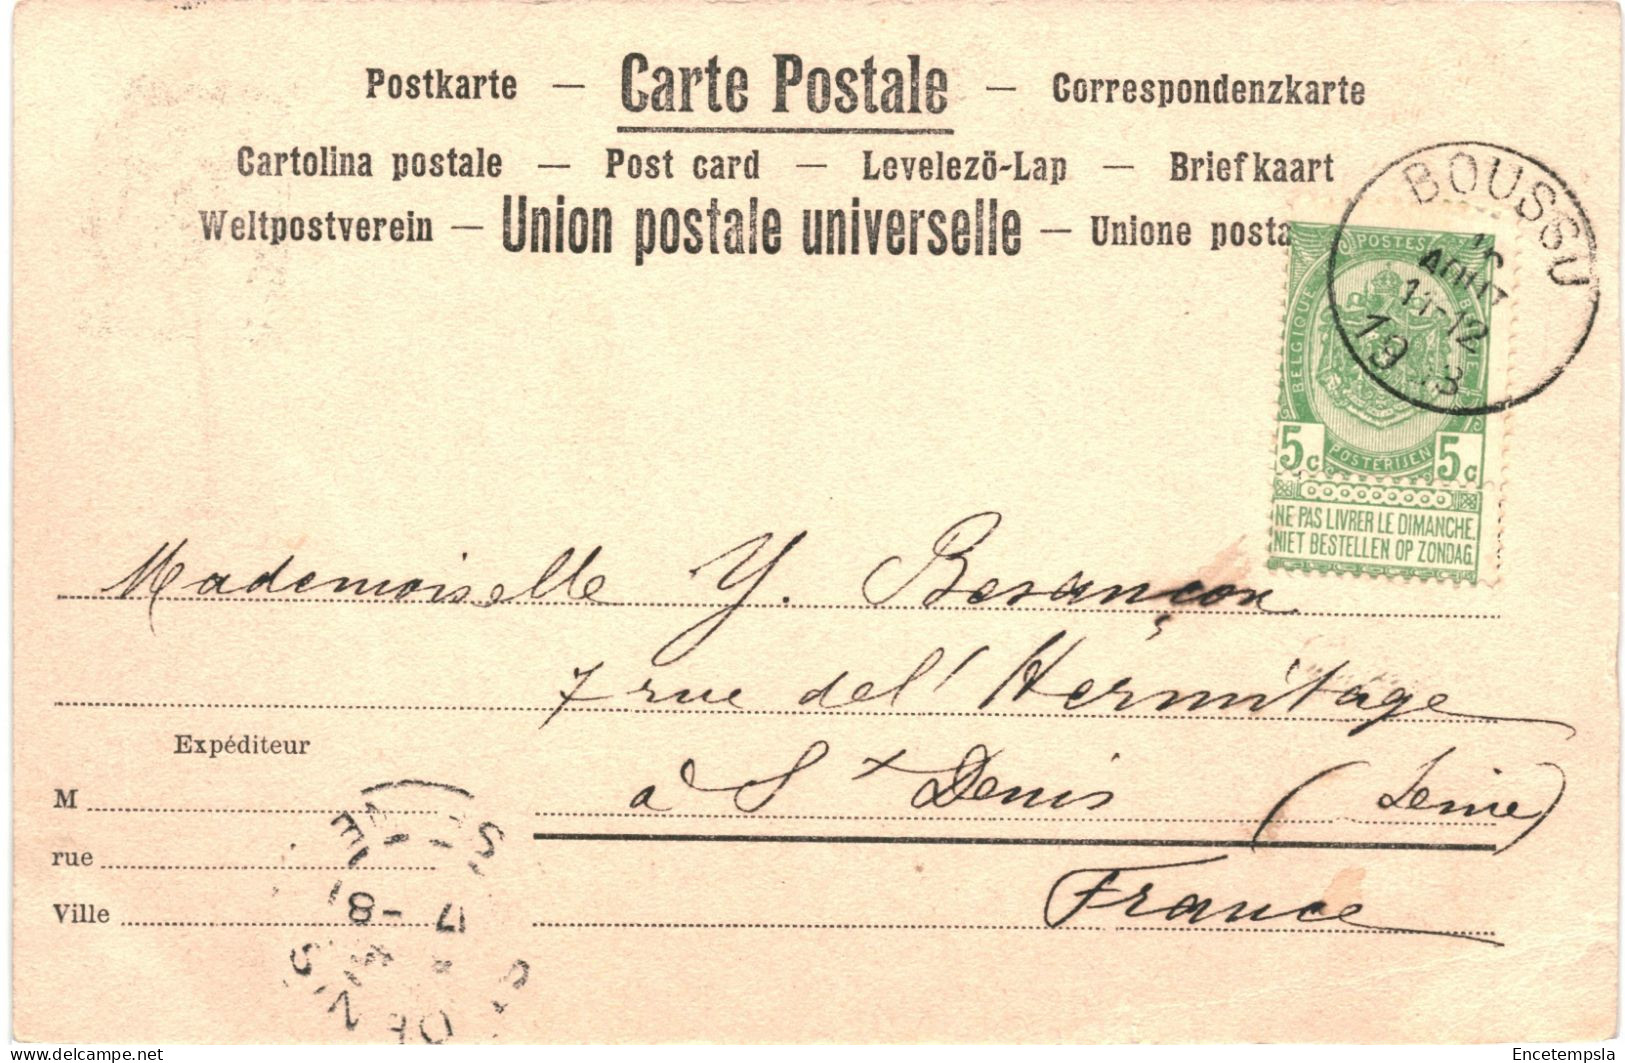 CPA Carte Postale Belgique Boussu Le Château De Nedonckel 1903 VM73312 - Boussu